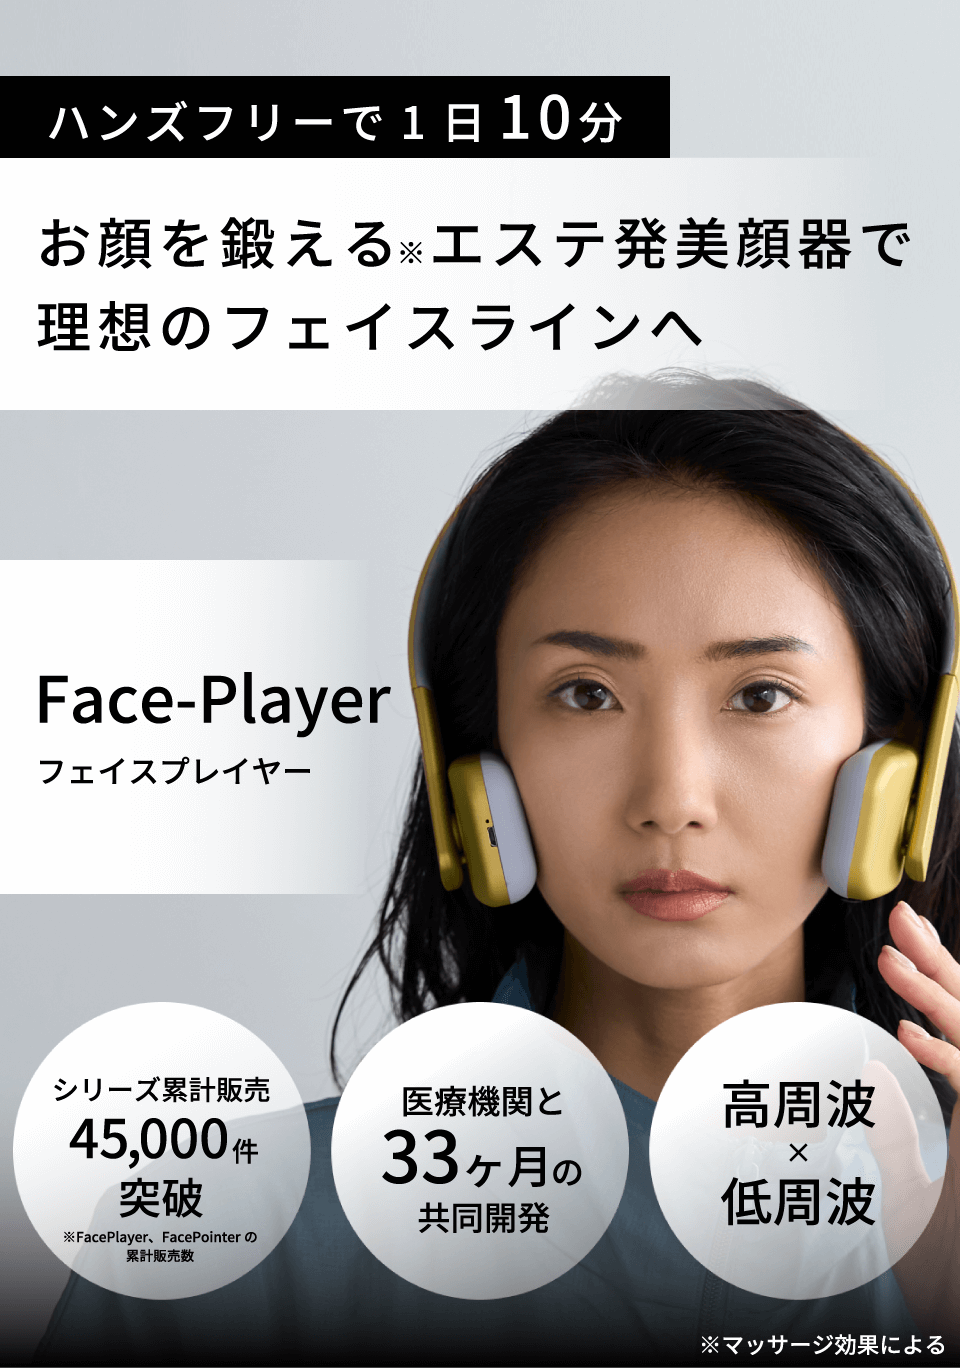 電源方式充電式COREFIT Face-Player コアフィット フェイスプレイヤー